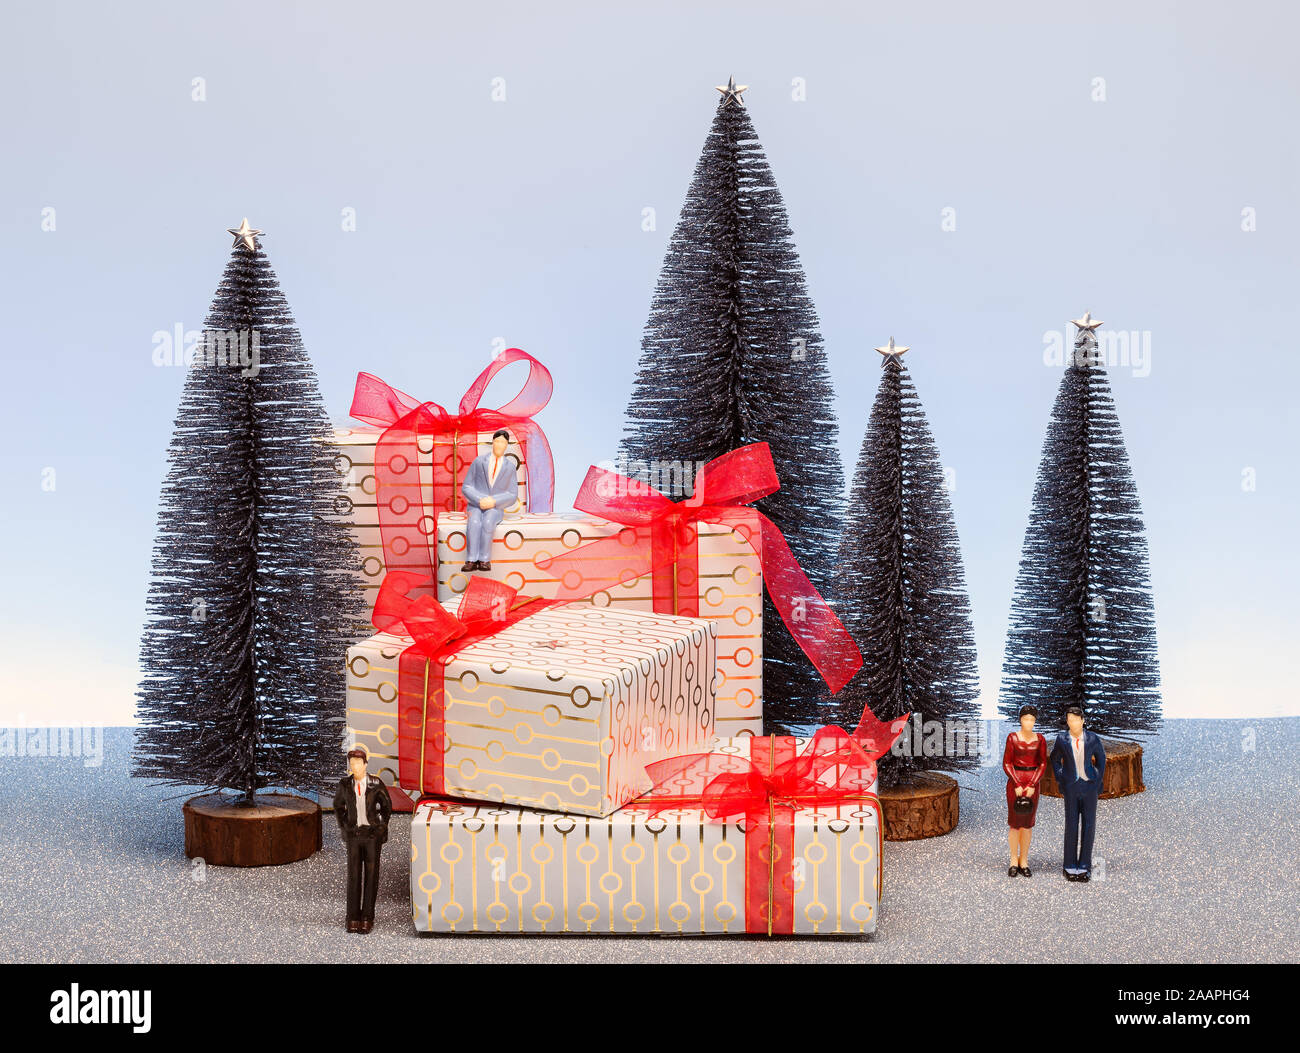 Weihnachten Szene mit Miniatur Tannen, Menschen und Geschenke. Weihnachten Konzept Stockfoto